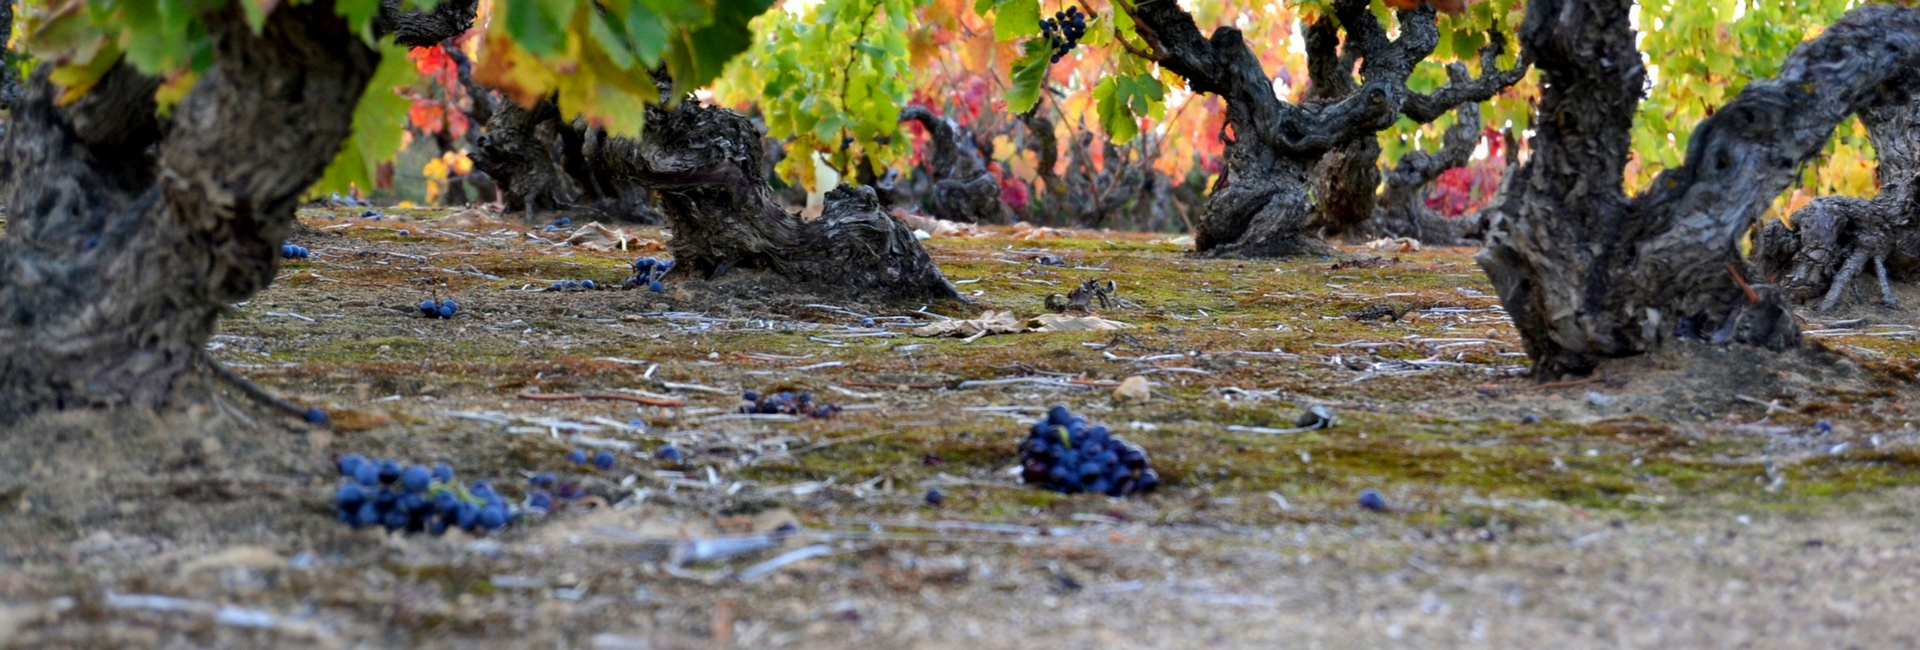 Cómo afecta el cambio climático al vino